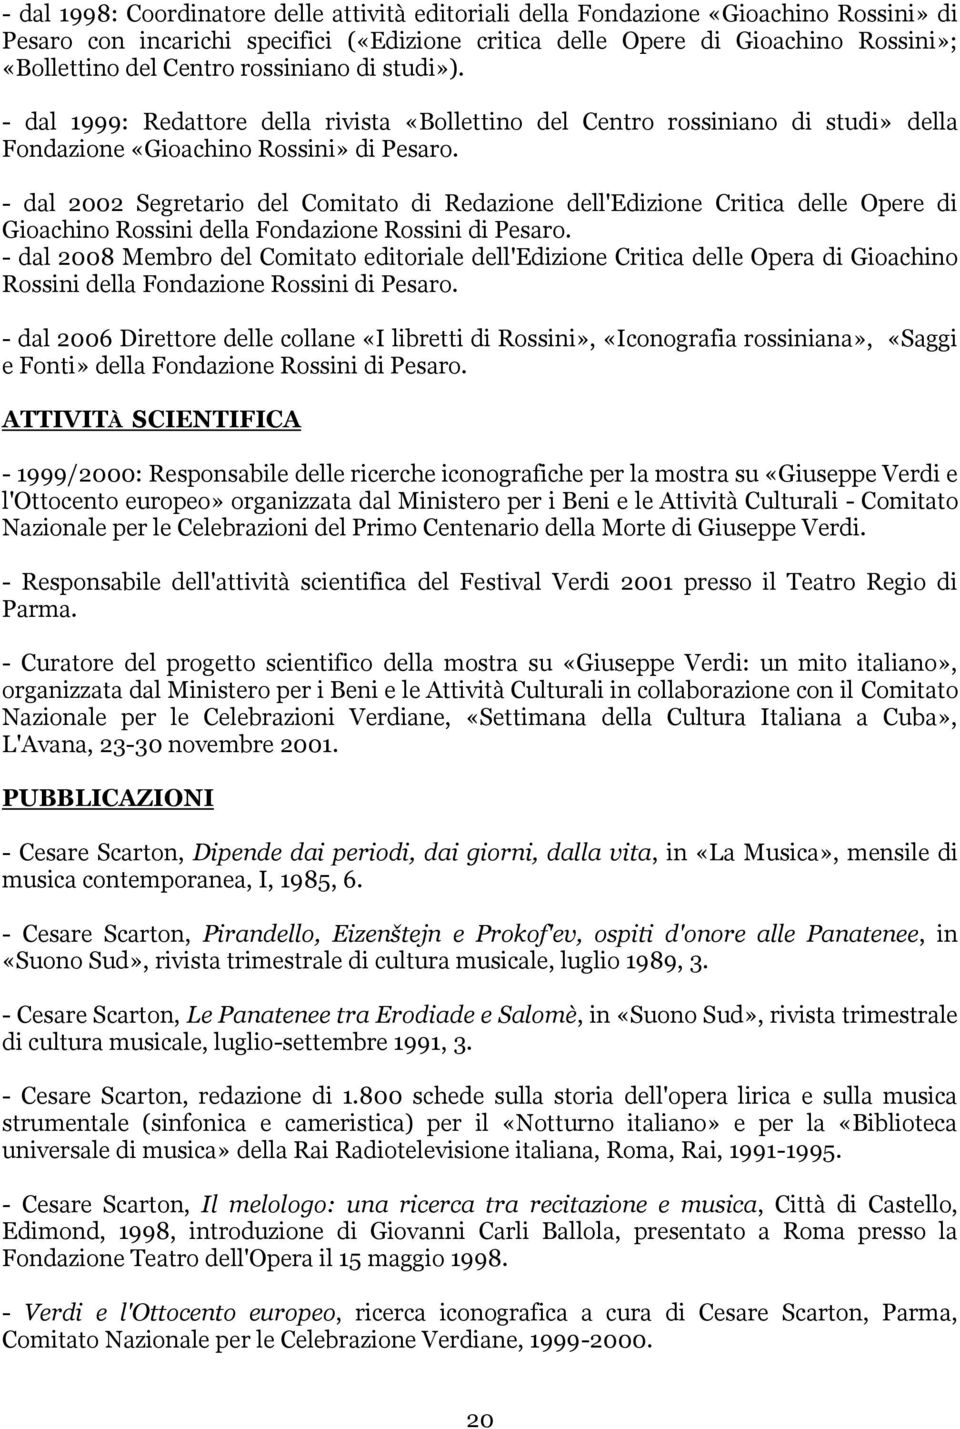 - dal 2002 Segretario del Comitato di Redazione dell'edizione Critica delle Opere di Gioachino Rossini della Fondazione Rossini di Pesaro.